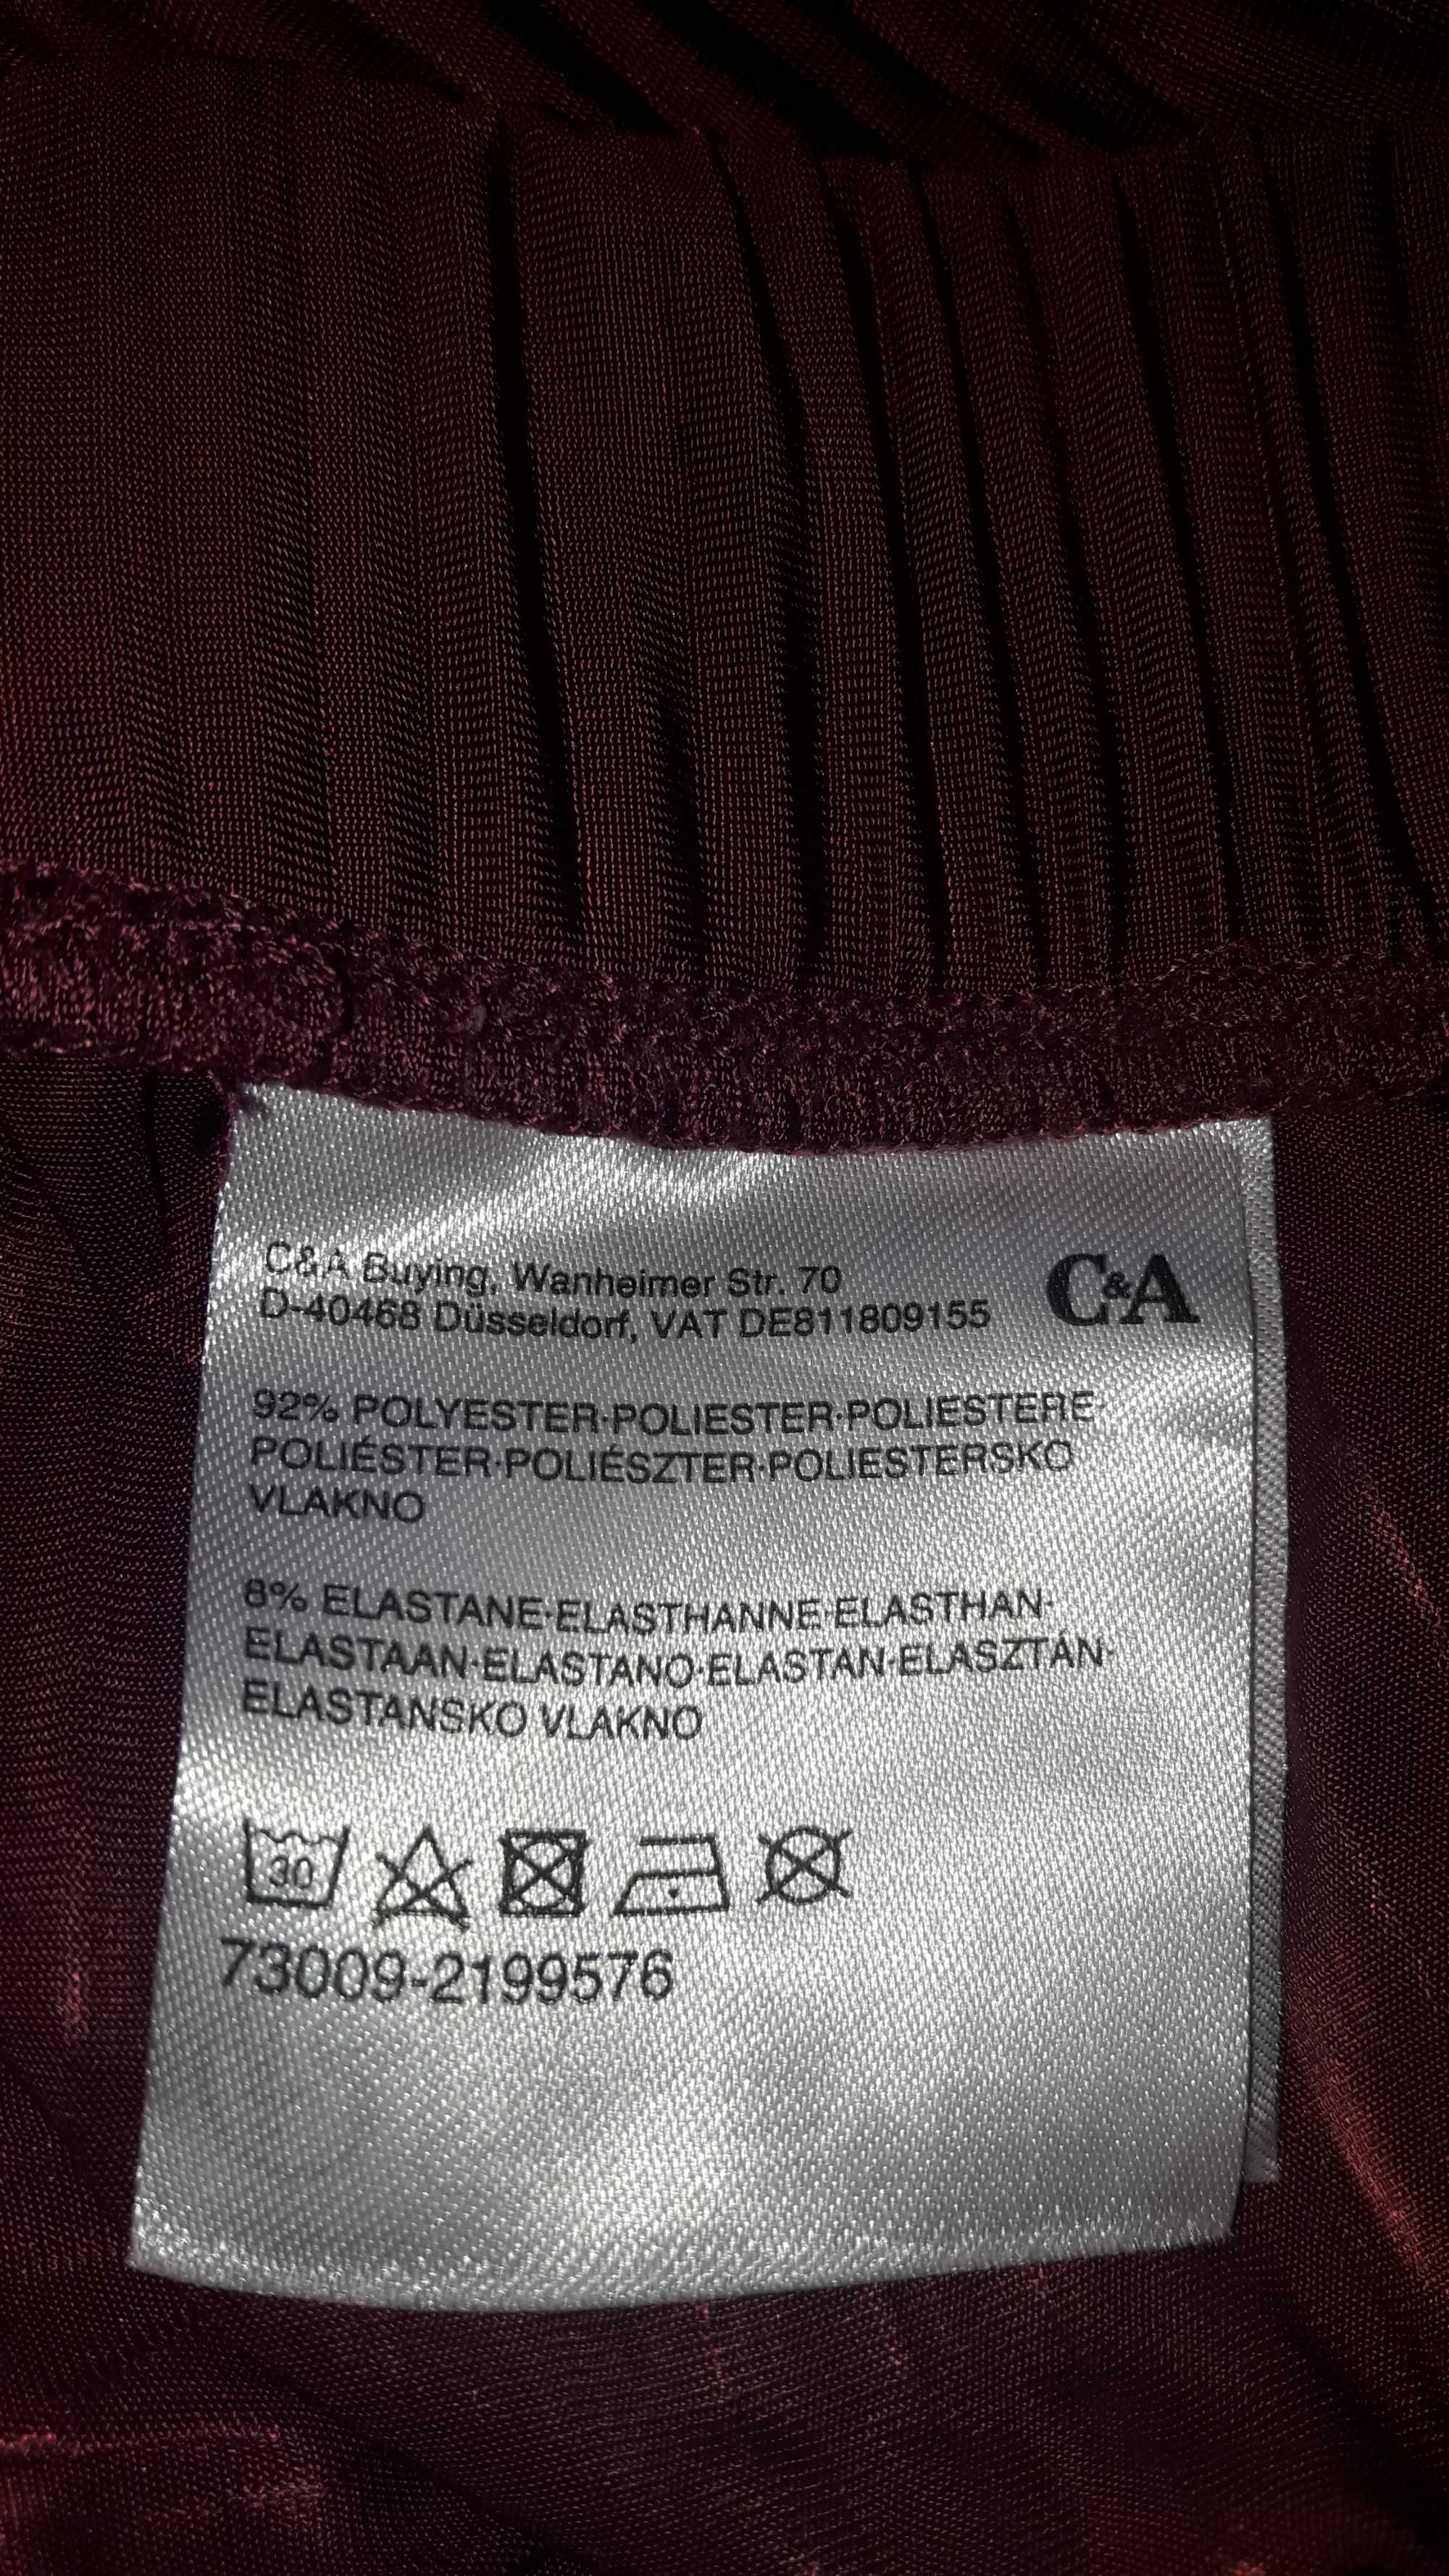 C&A Spódnica plisowana bordowa roz. 42